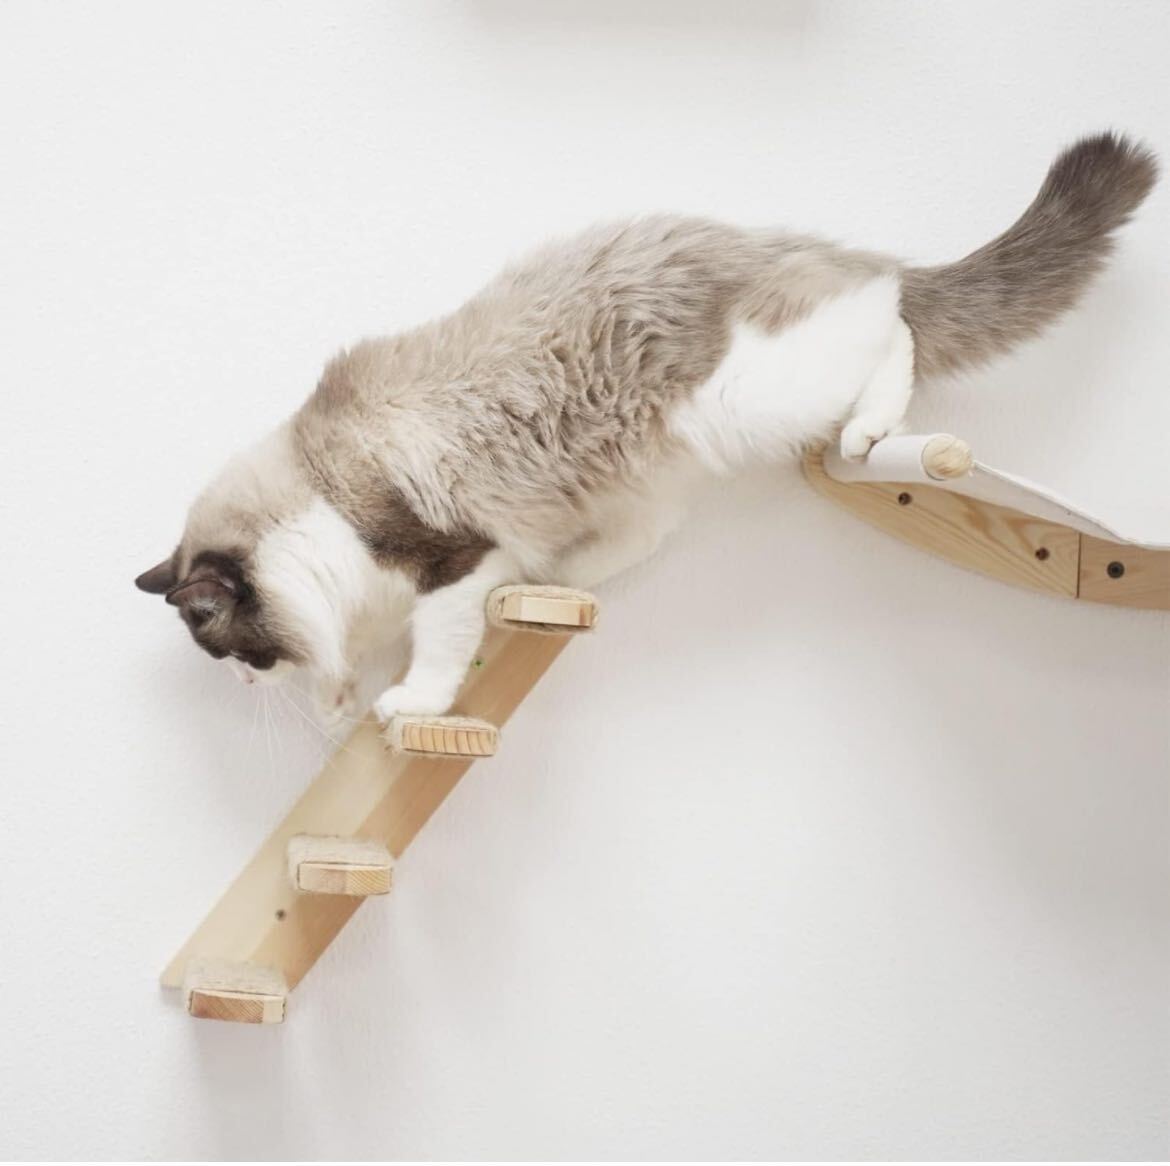  cat hammock wall installation cat stair step cat furniture cat walk 